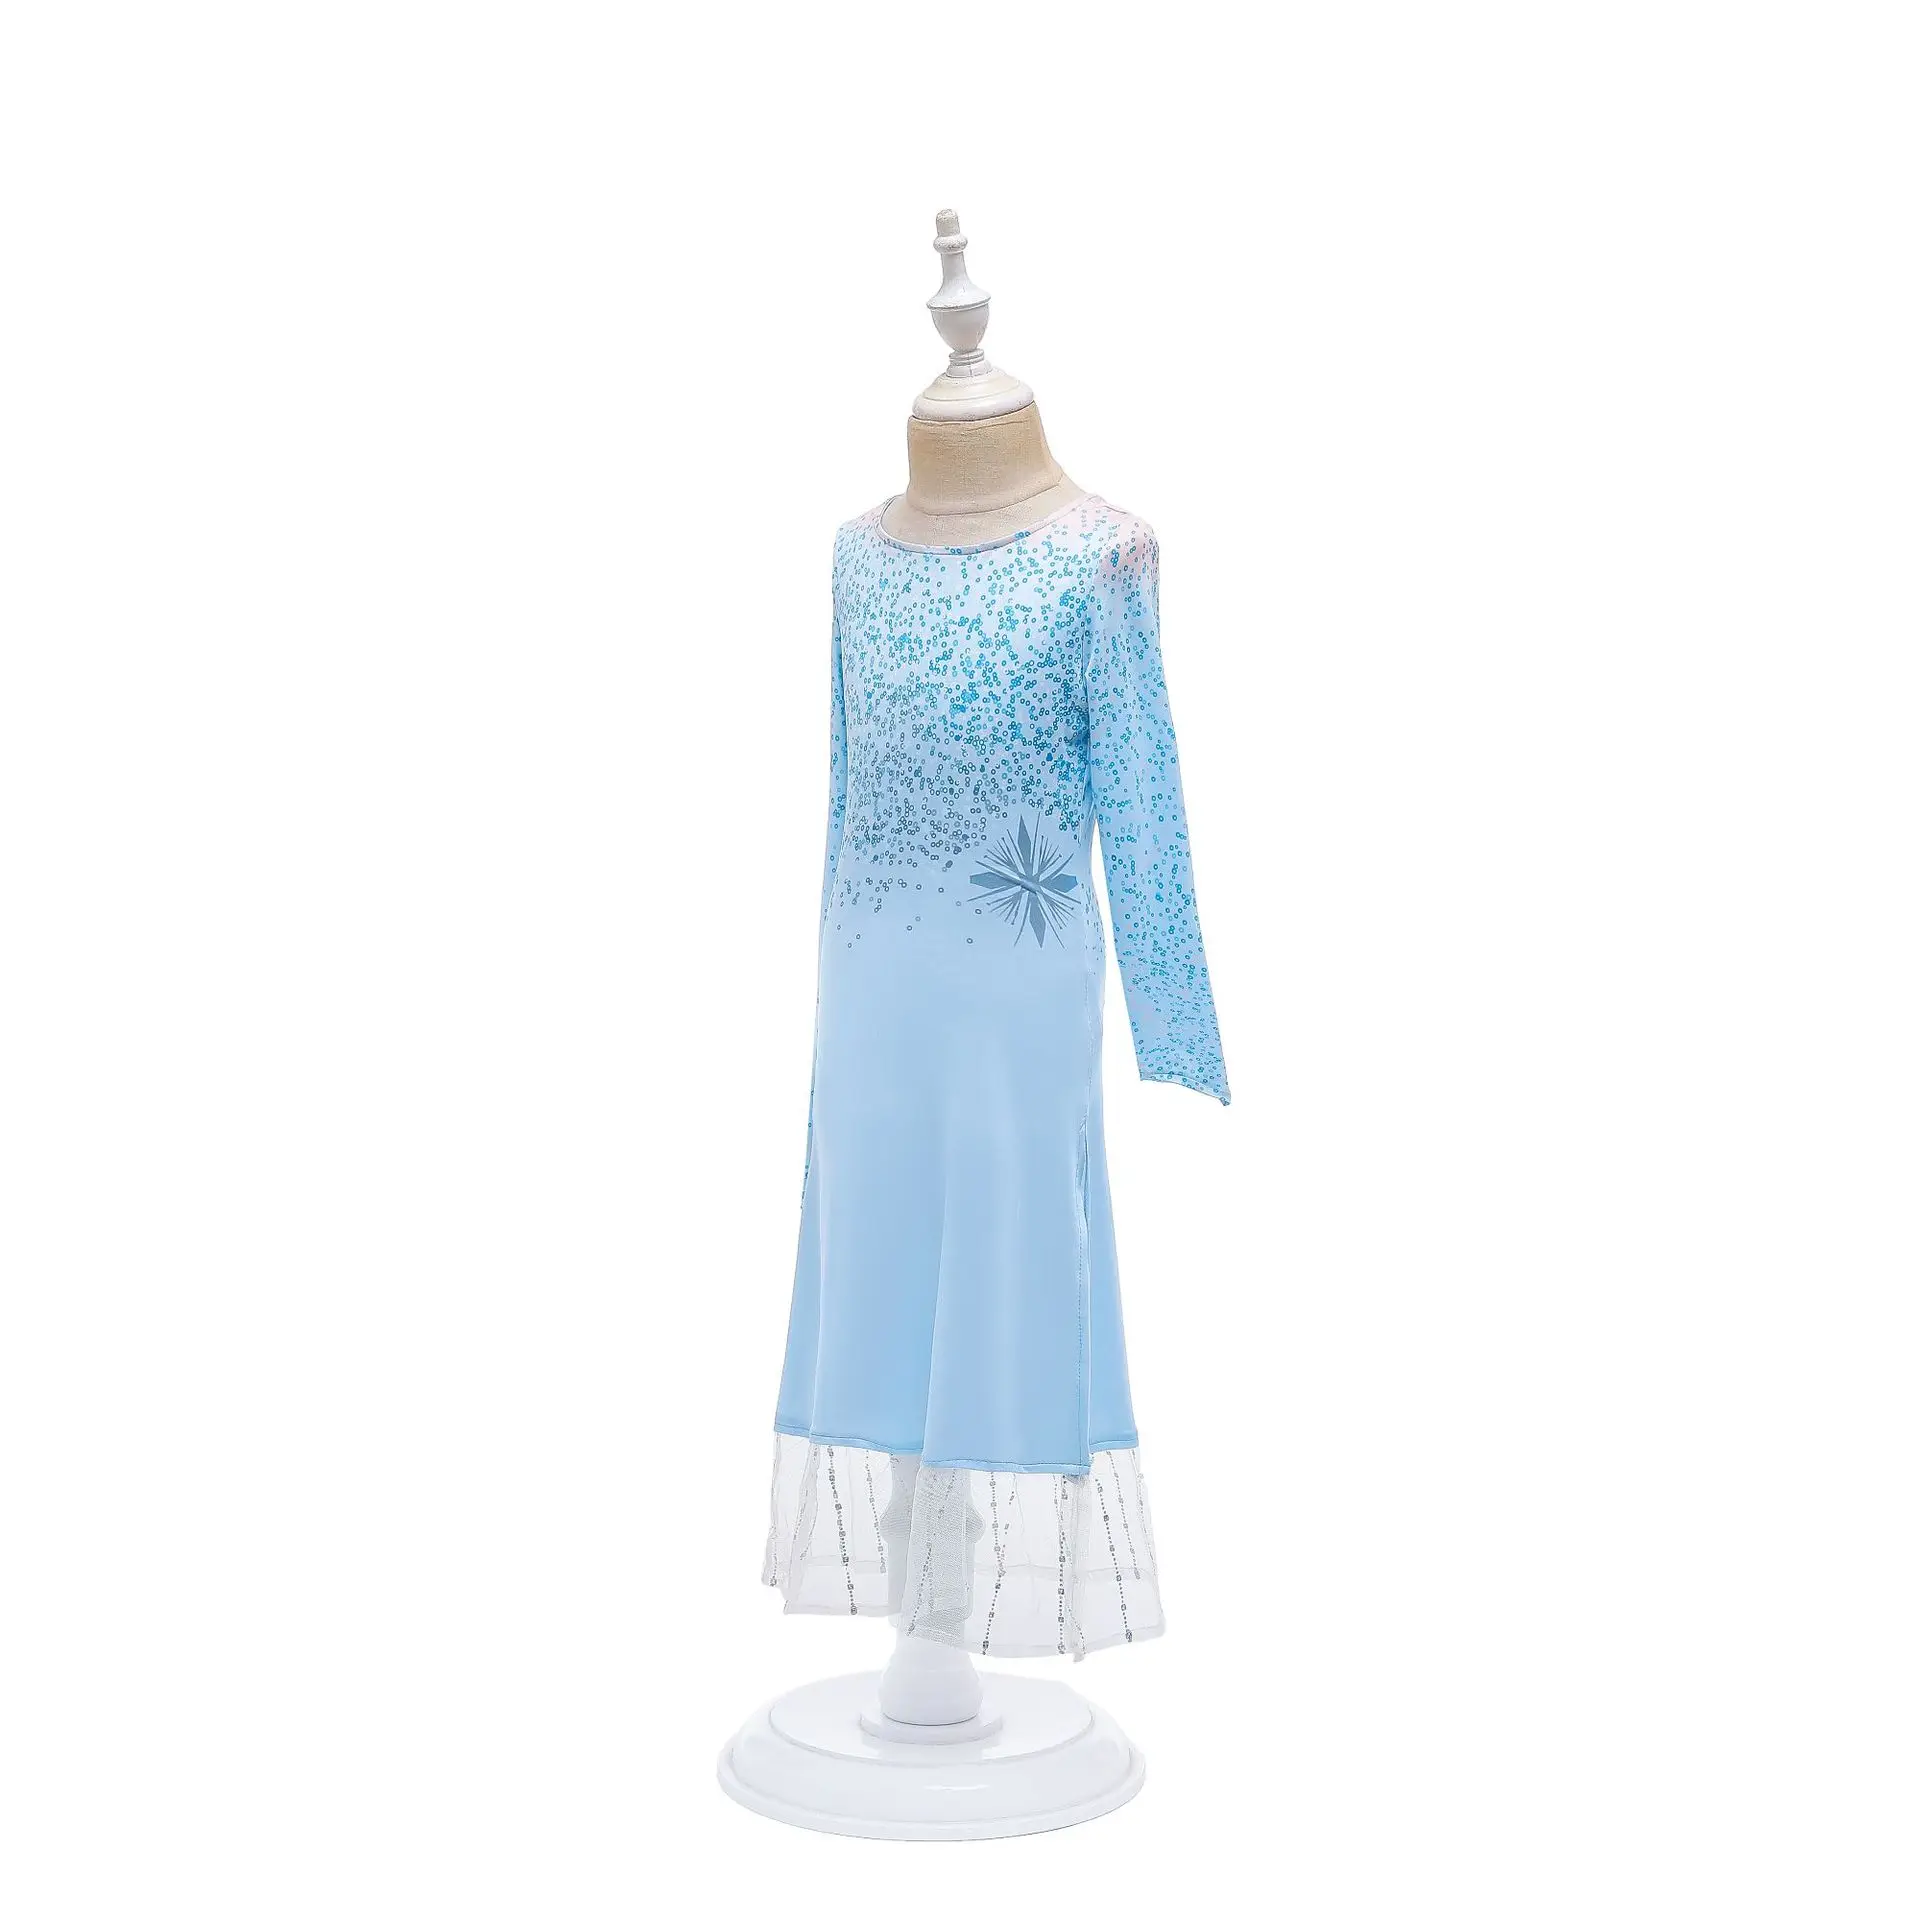 Новое платье для девочек; Одежда для девочек; комплект принцессы Эльзы из 2 предметов; рождественское платье Эльзы для костюмированной вечеринки; платье принцессы небесно-голубого цвета на день рождения